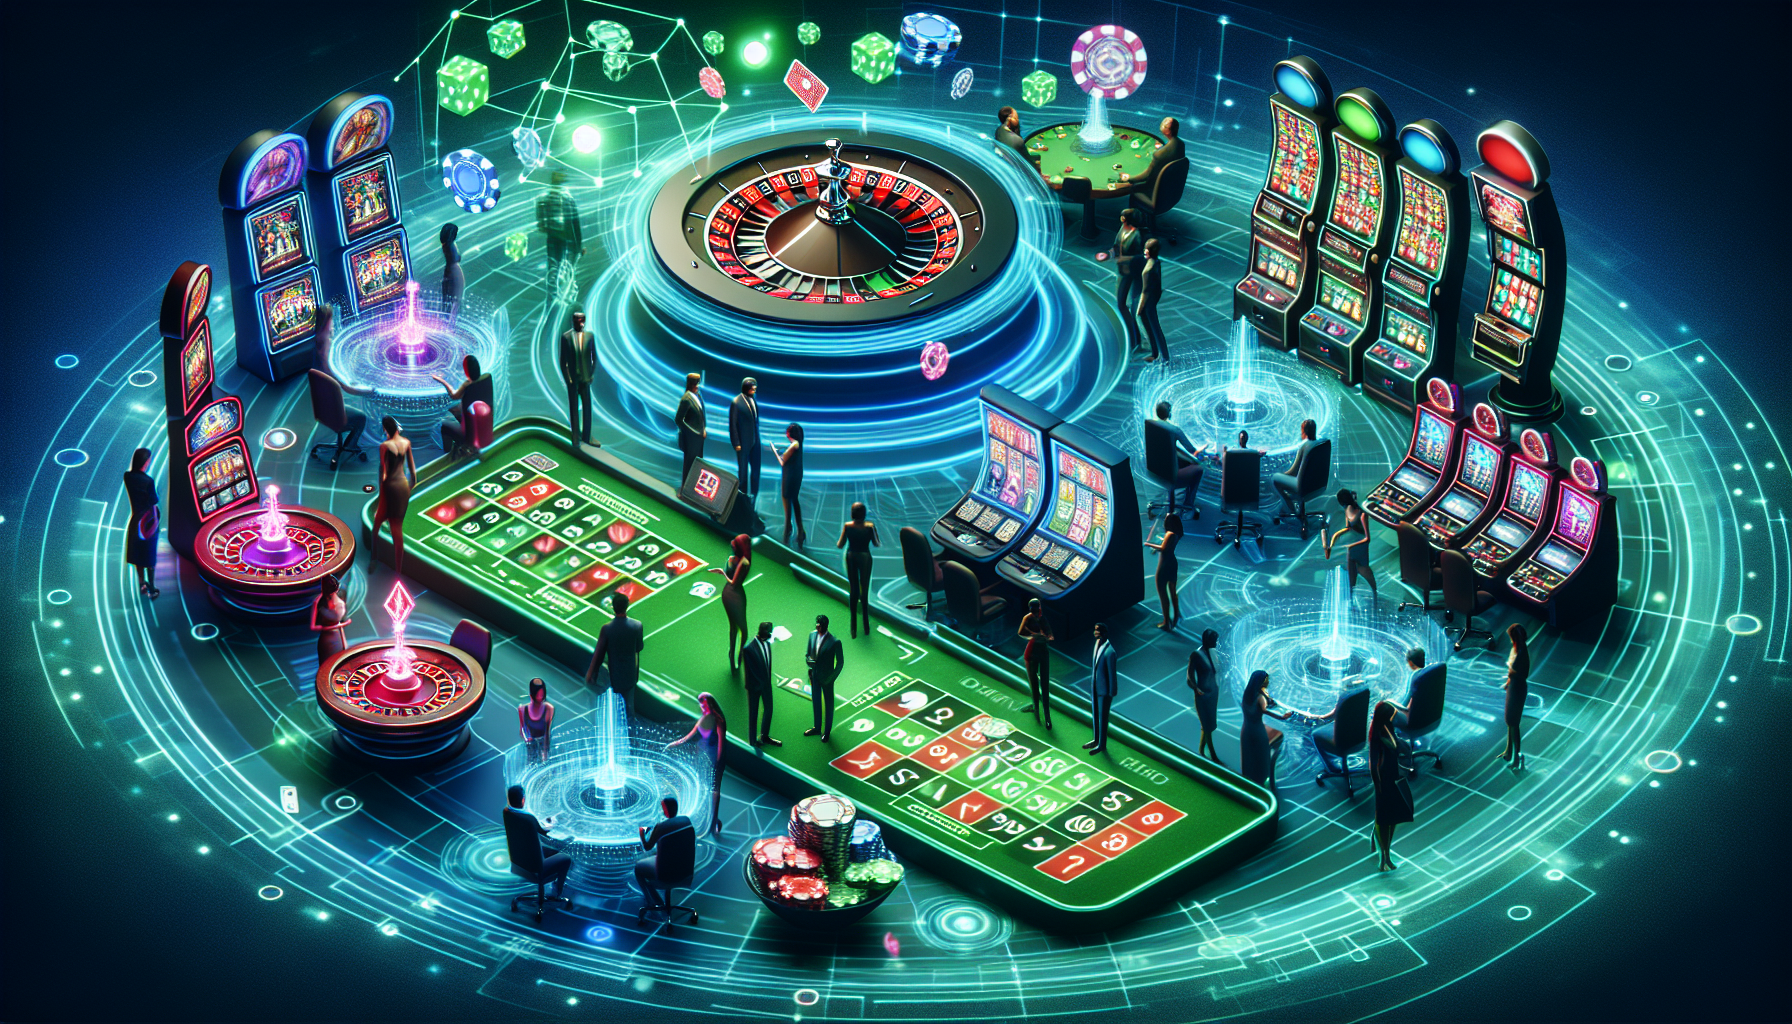 Artistic representation of a virtual online casino platform